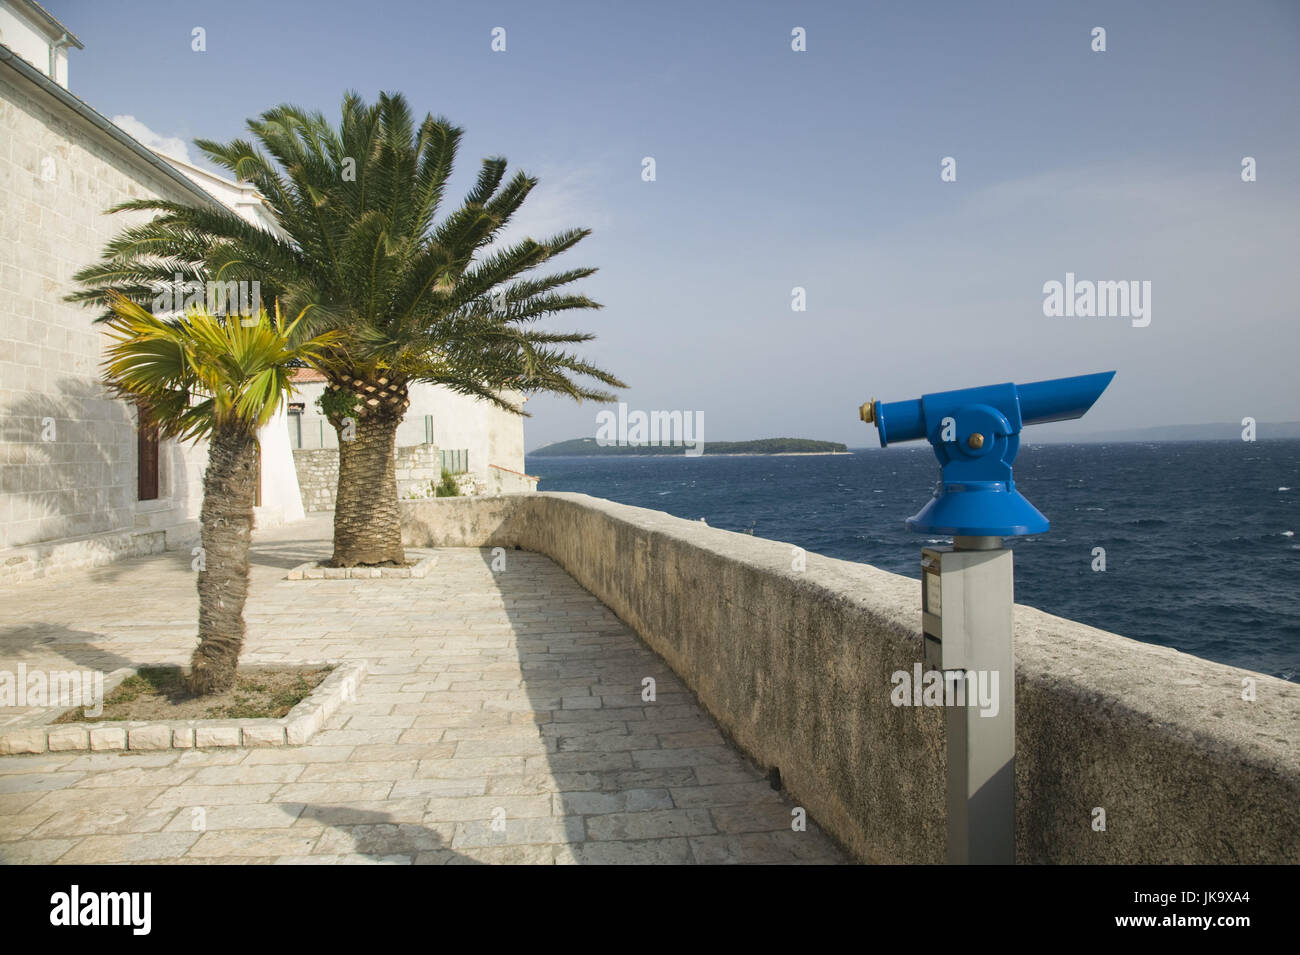 Kroatien, Kvarner-Bucht, Insel Rab, Stadt Rab, Ufer, Aussichtspunkt, Fernrohr, Palmen, Stock Photo